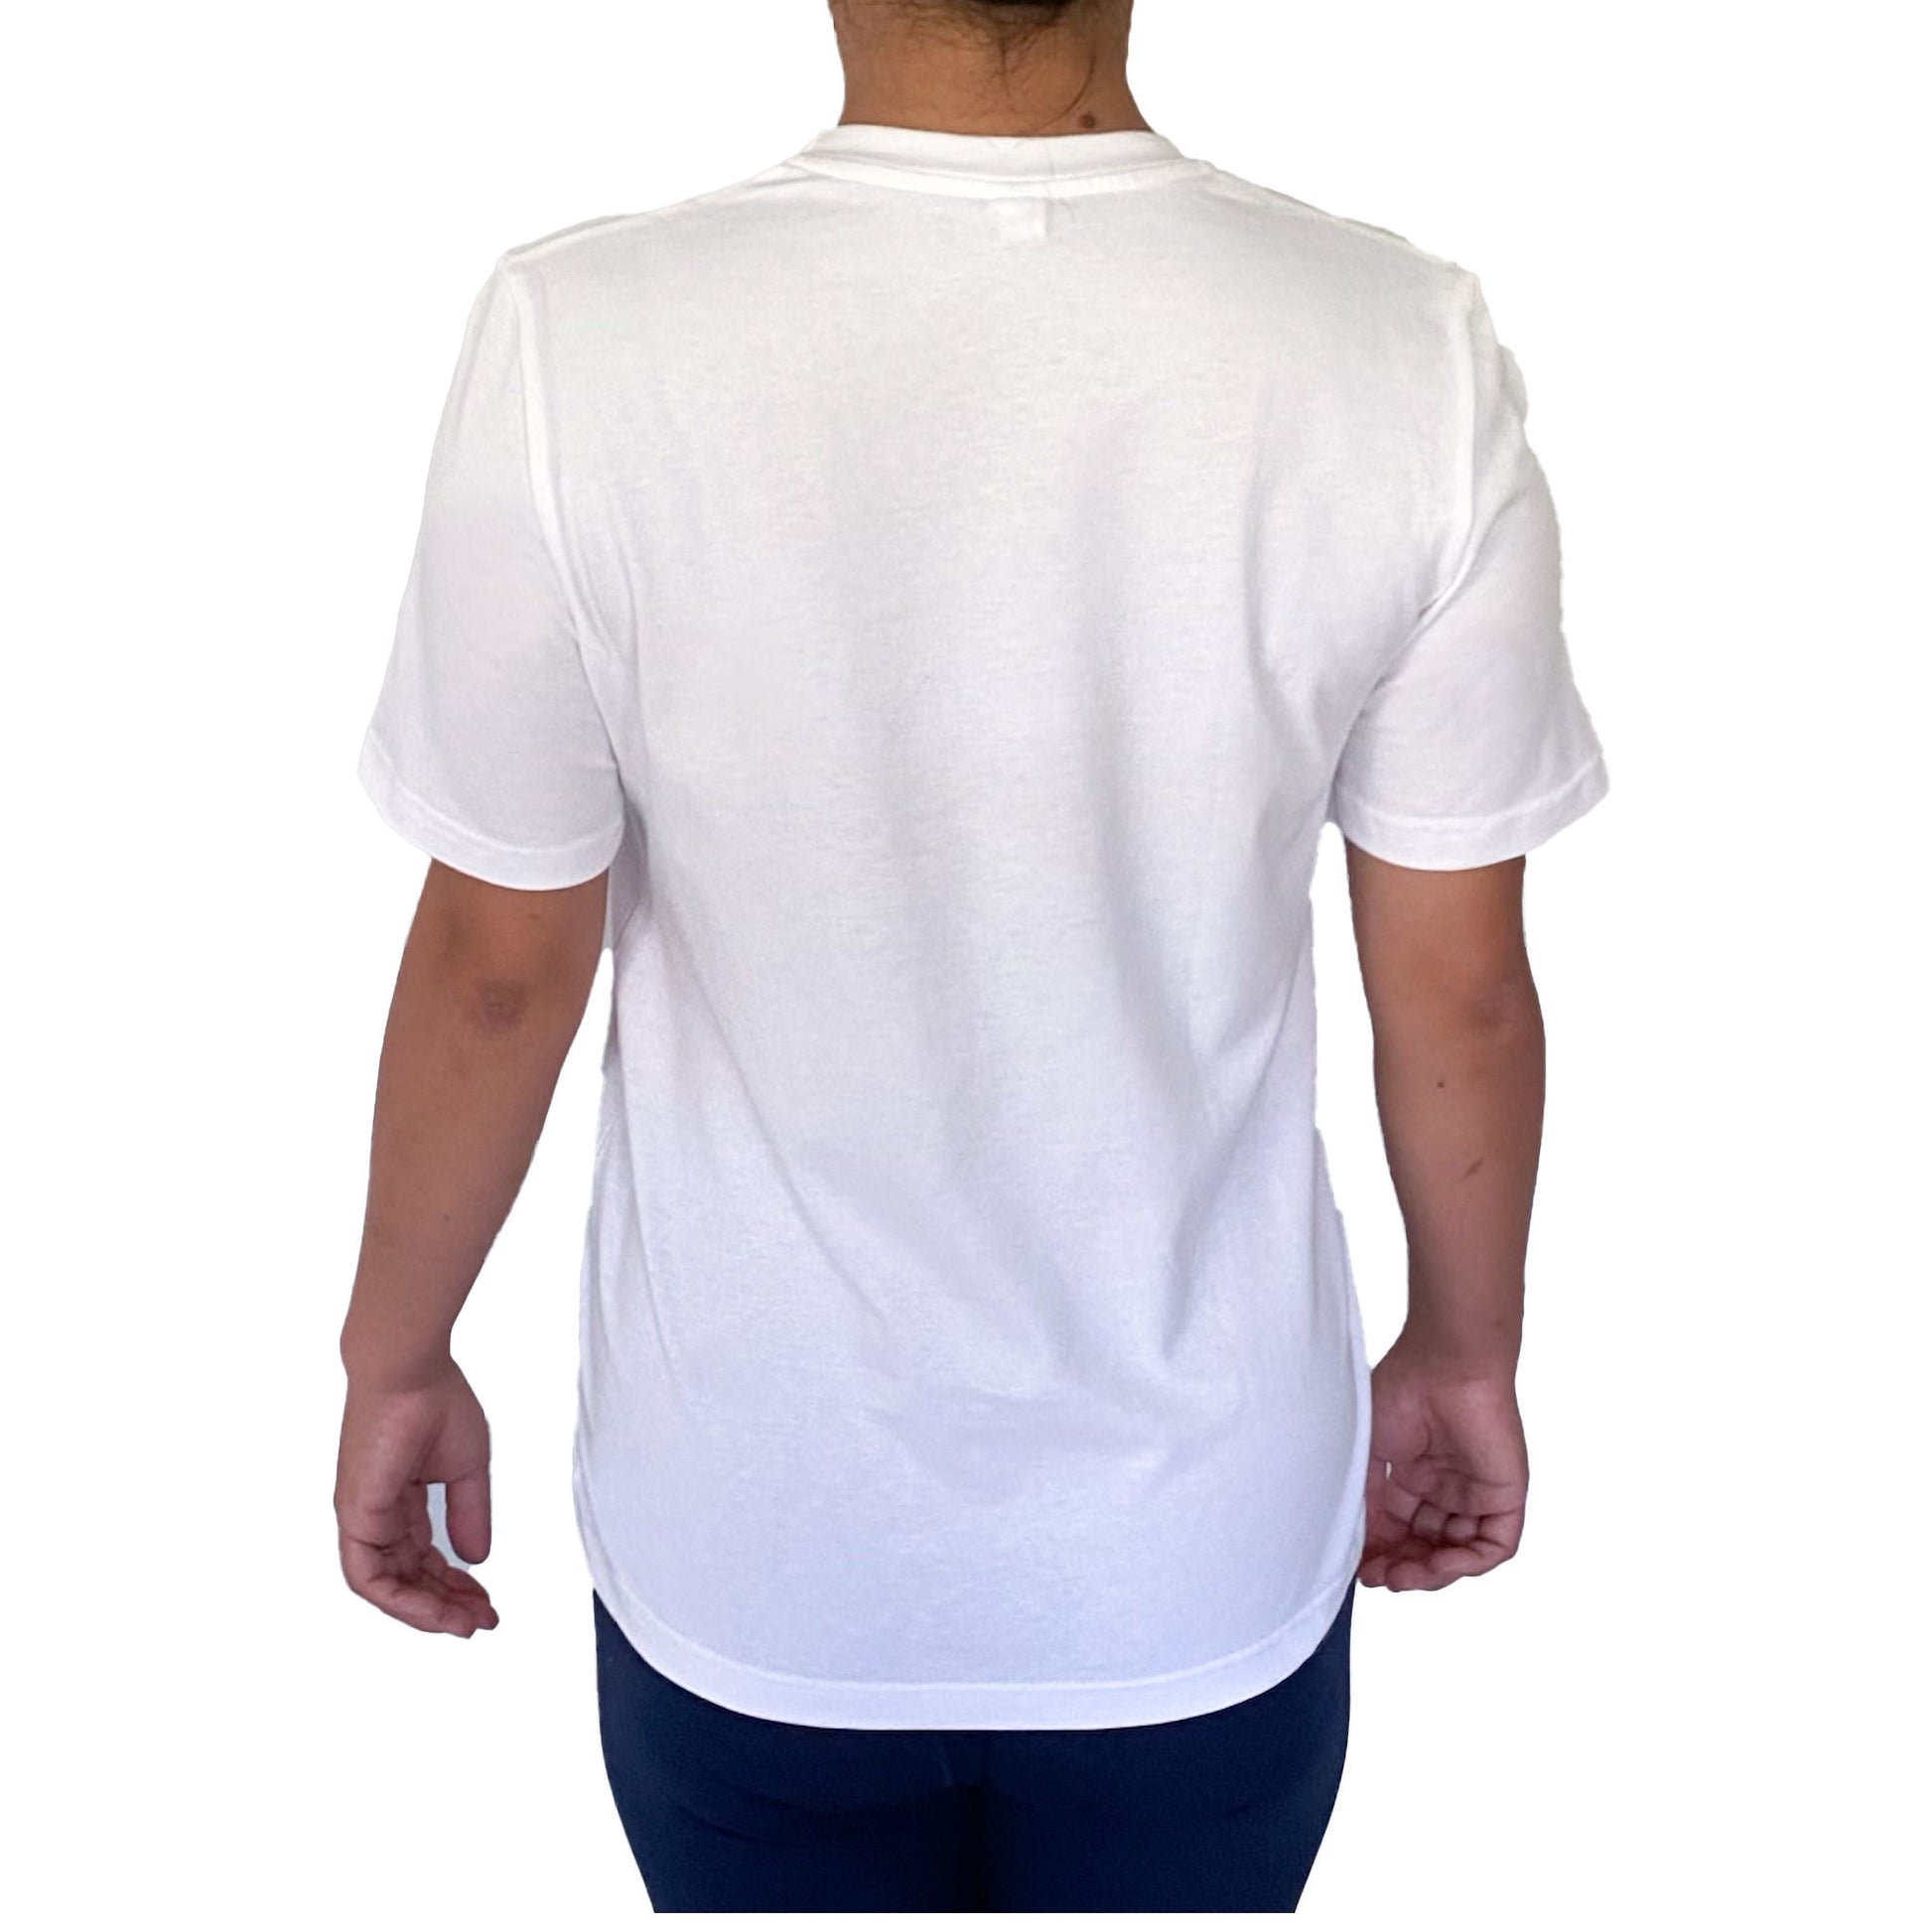 Ethical organic unisex t-shirt white V genderless bob